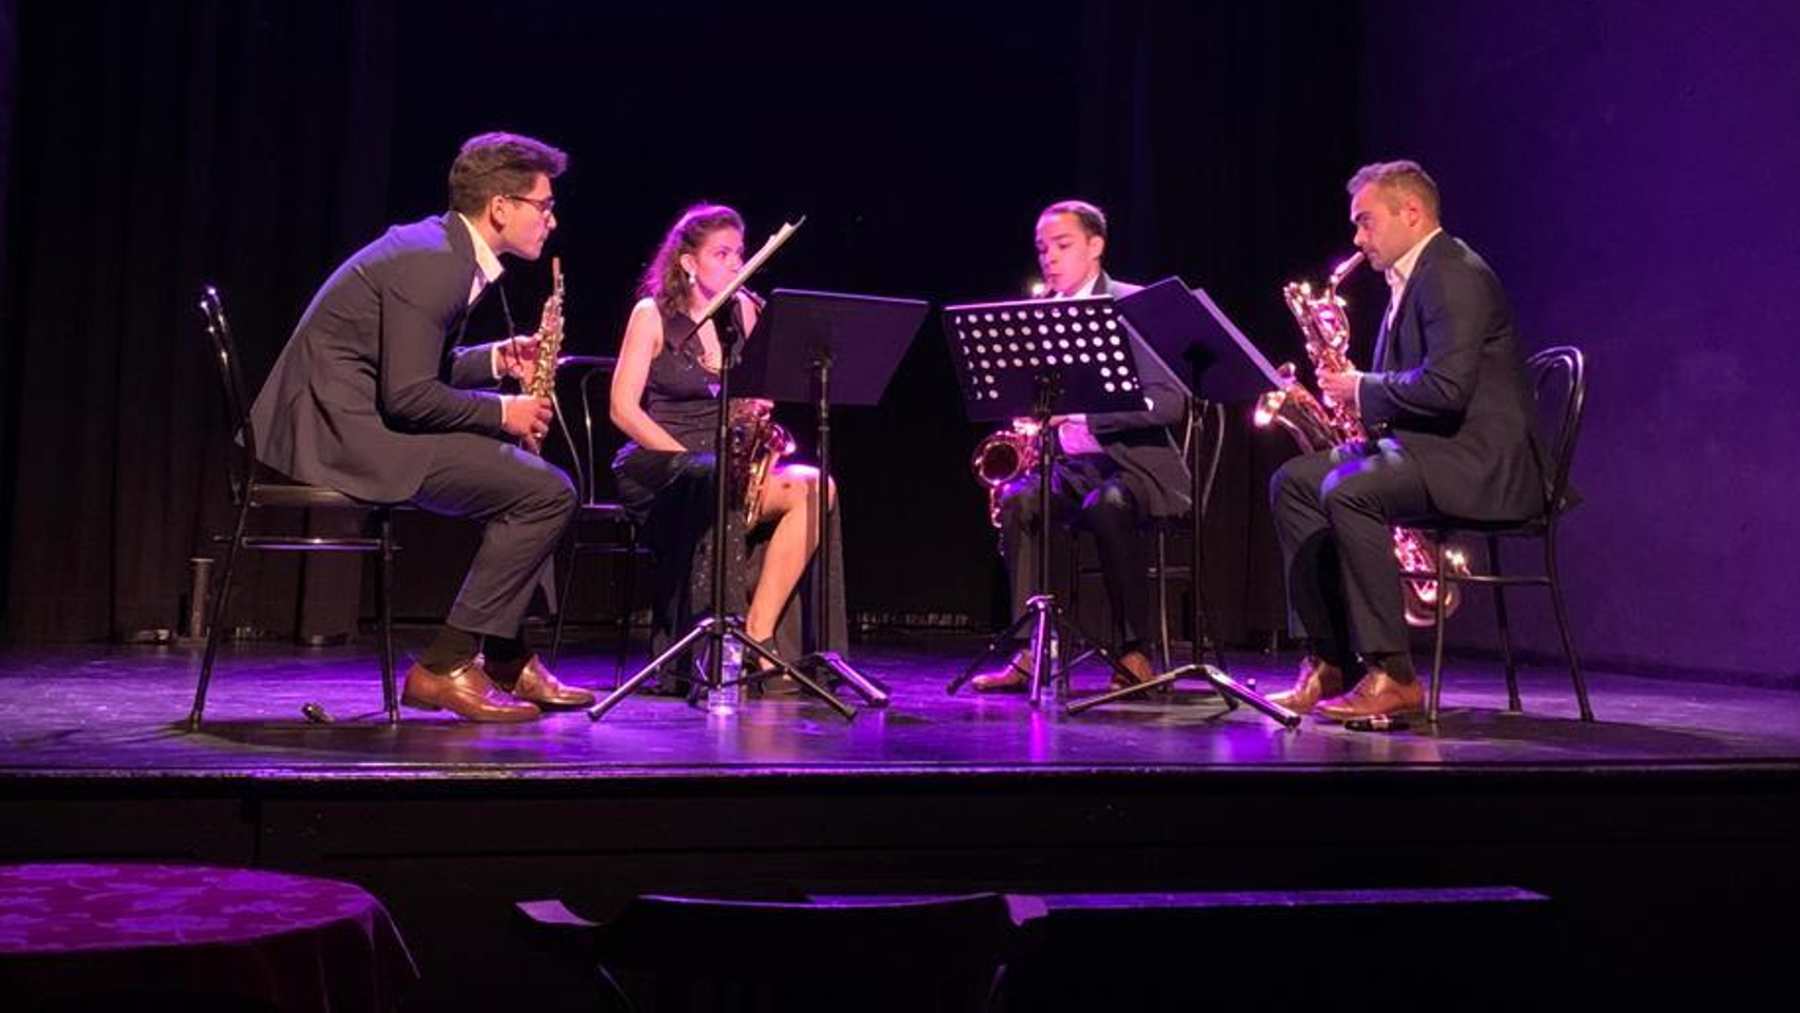 Recital que dio Lítore Quartet en el Teatre Sans el pasado 17 de marzo.